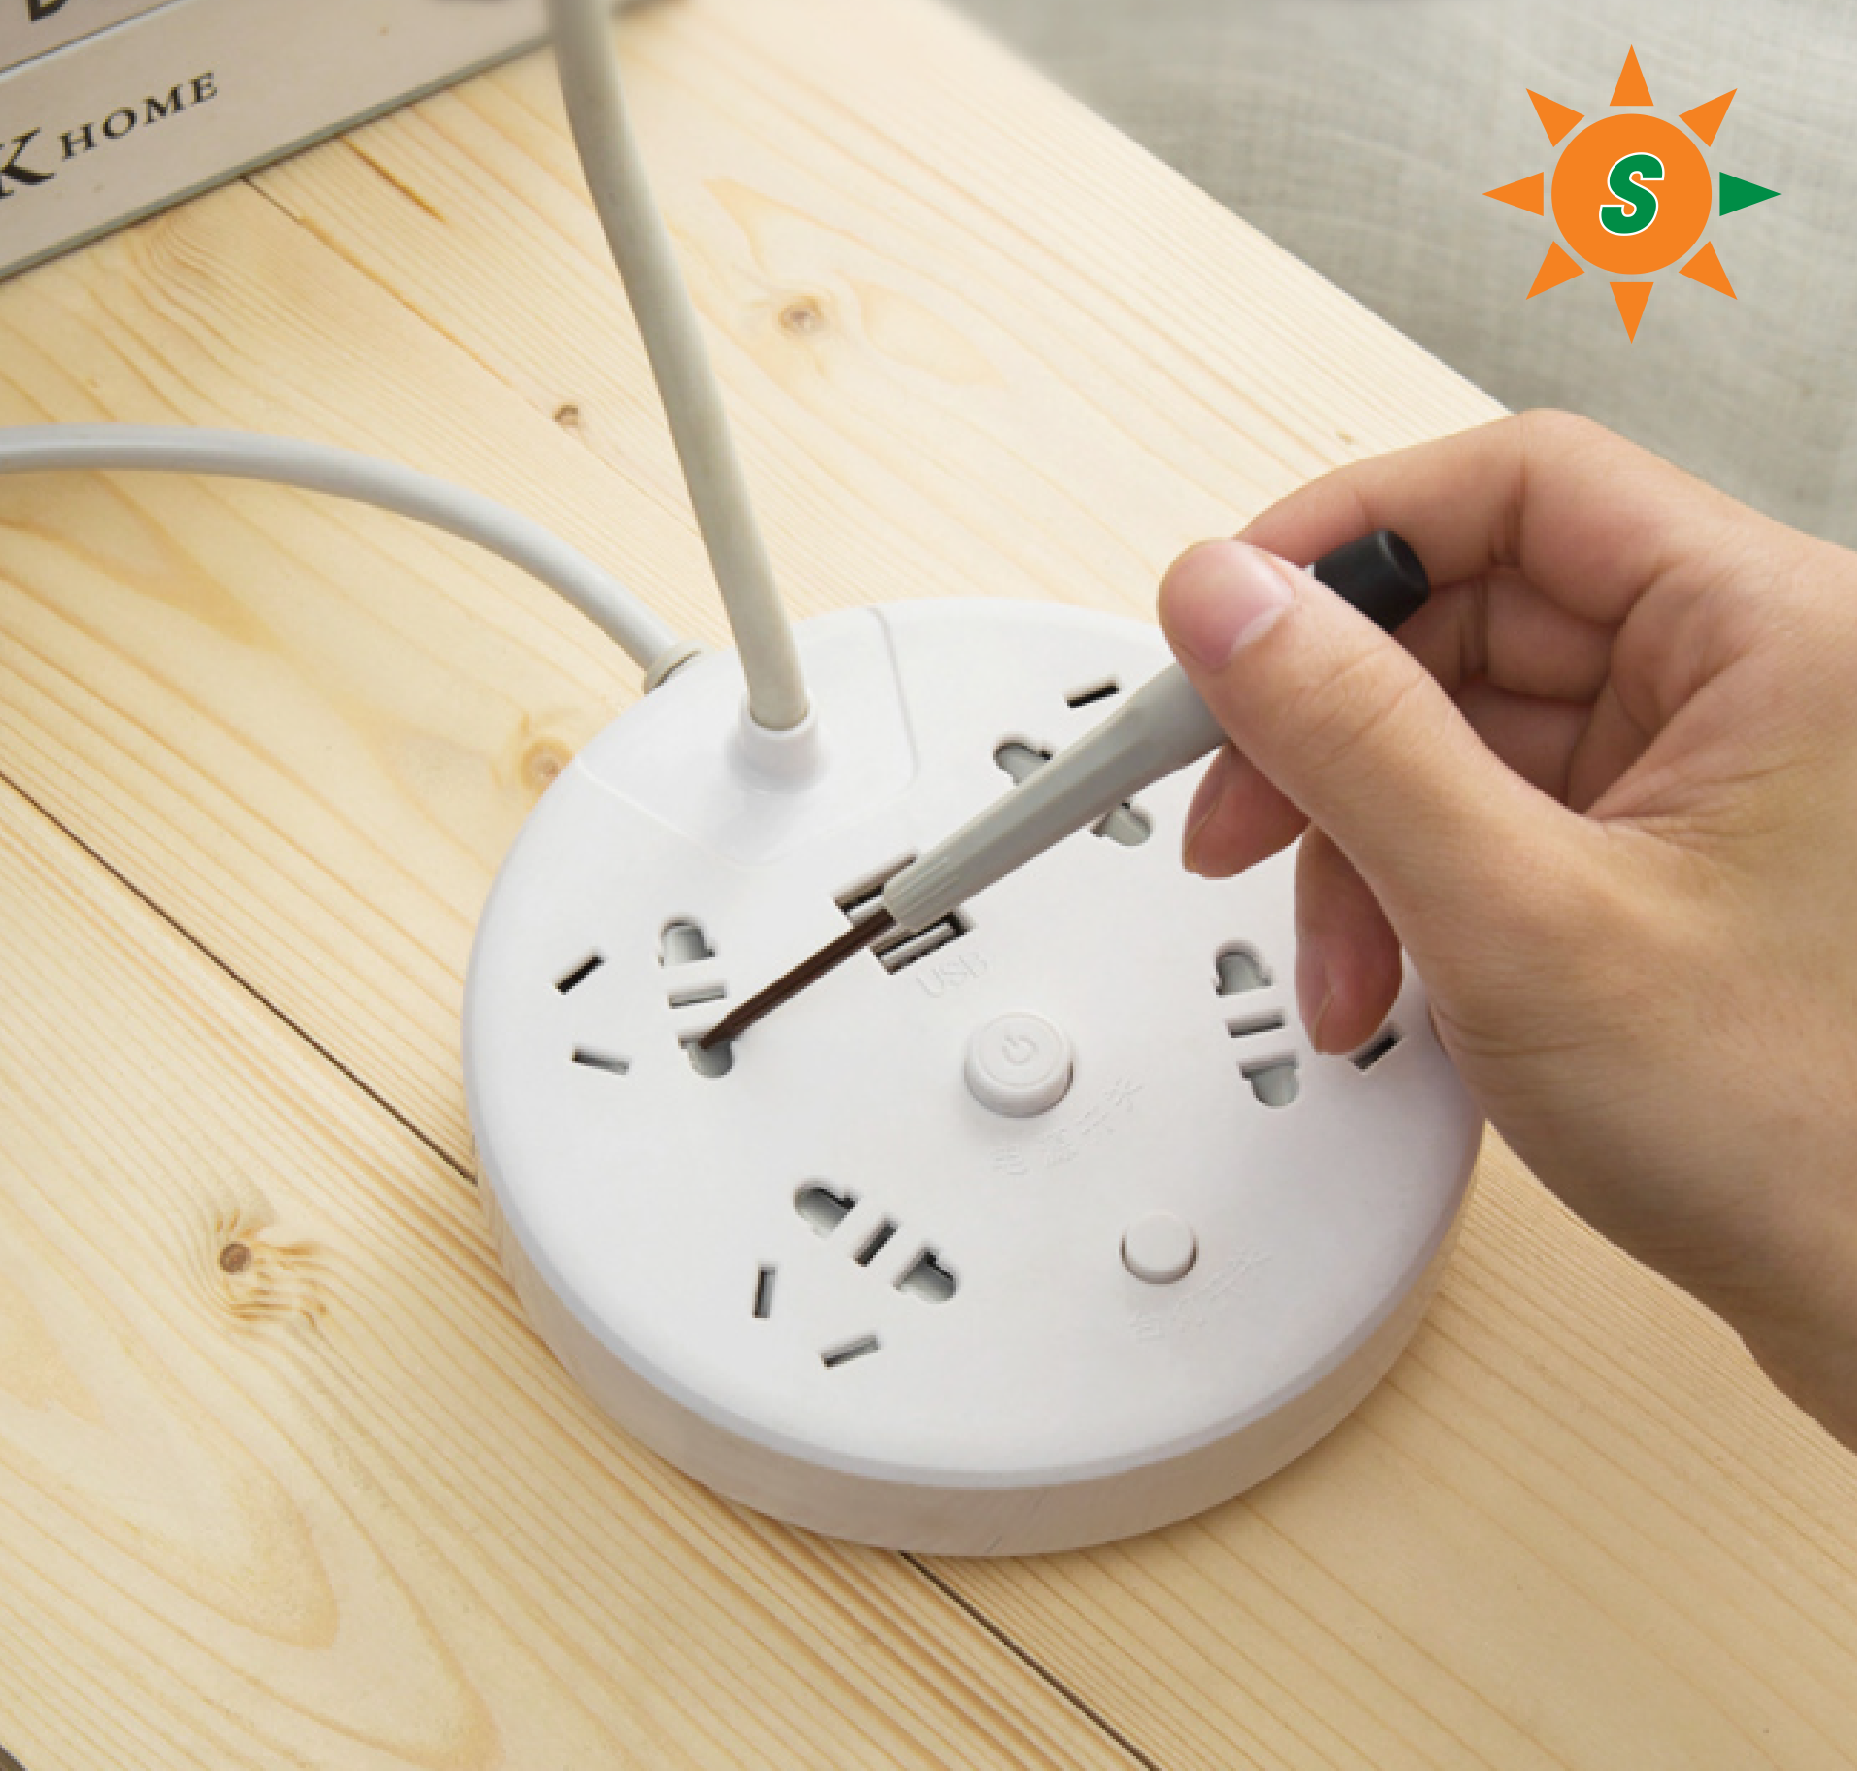 Đèn bàn học đa năng tích hợp ổ cắm điện và cổng USB sạc điện thoại, đèn led điều chỉnh được chiều cao